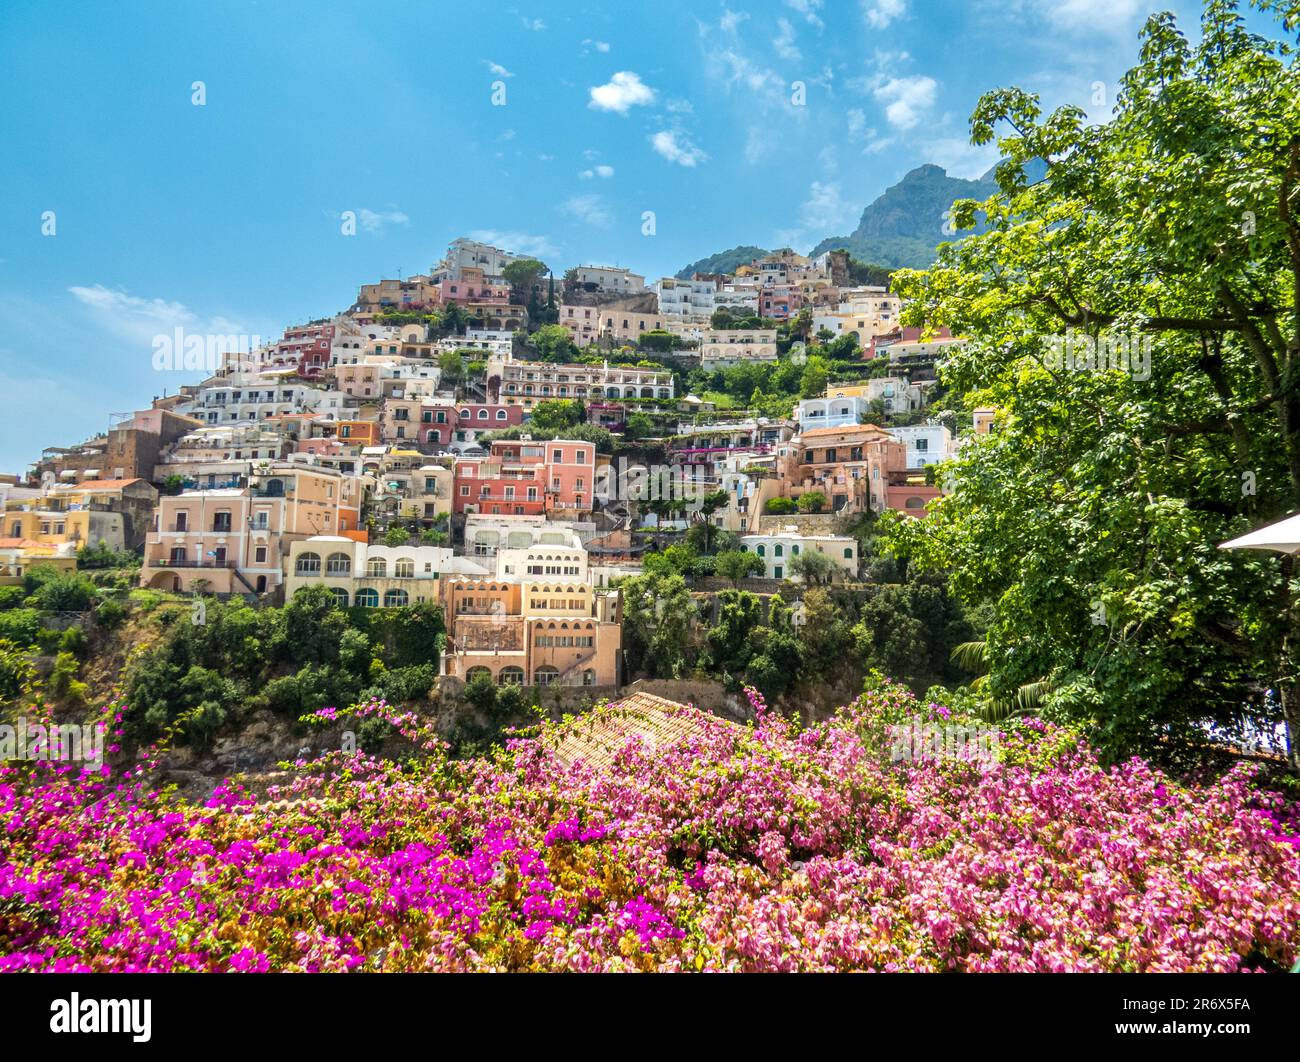 Positano, precioso pueblo de la costa amalfitana, para descubrir sus rincones, lo mejor pasear y subir a sus magníficos miradores, Italy Foto de stock